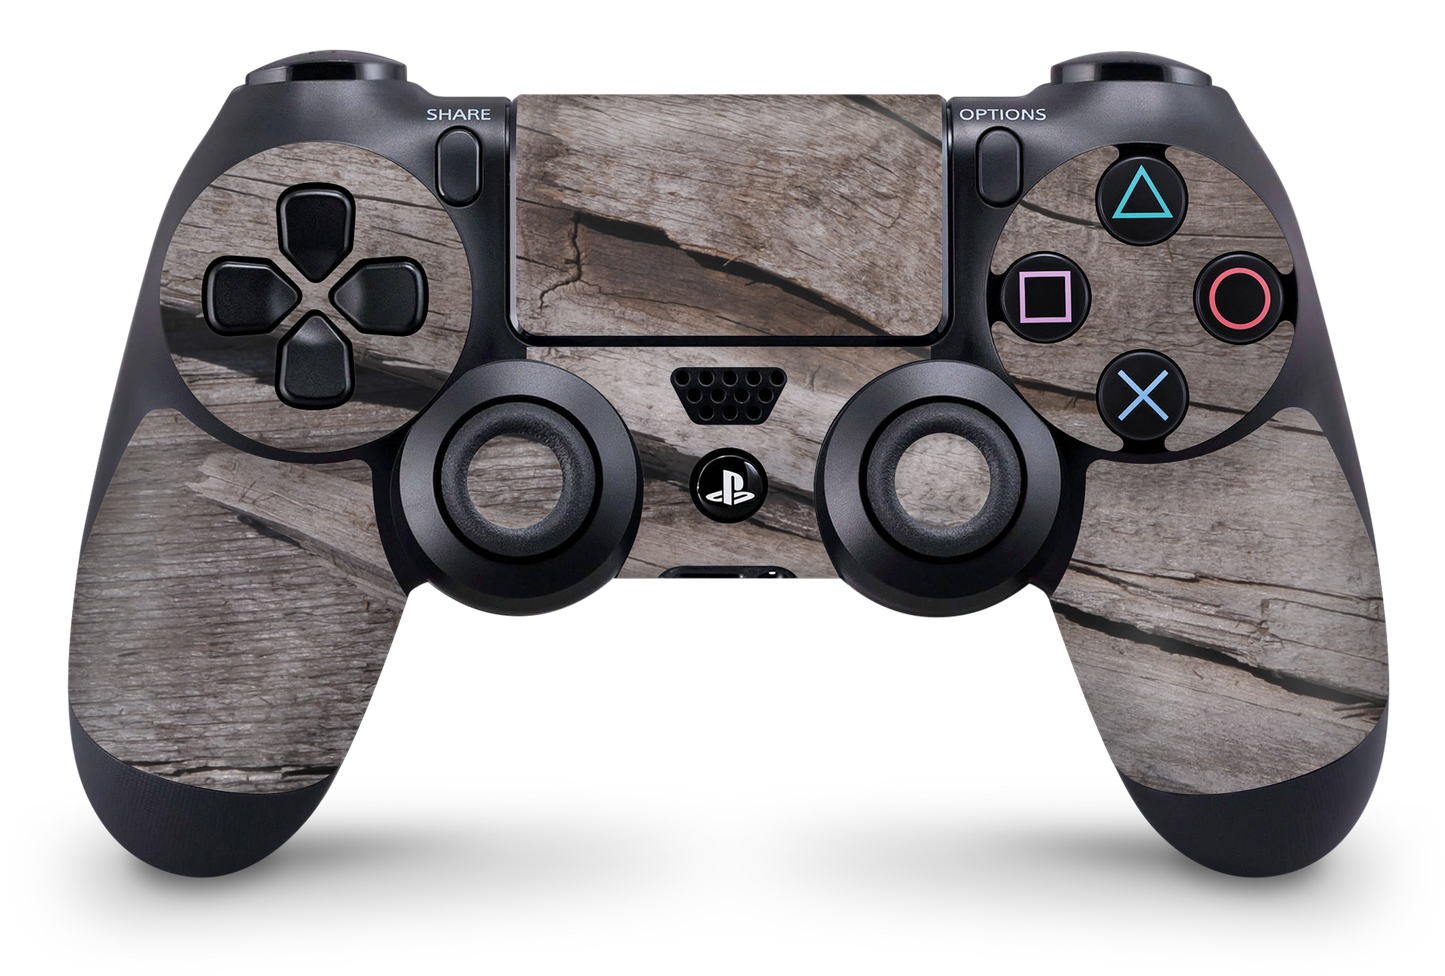 PS4 Playstation 4 Controller Skins - Vinyl Skin Aufkleber für Gaming Controller Split TXT Wood 9 Aufkleber Skins4u   